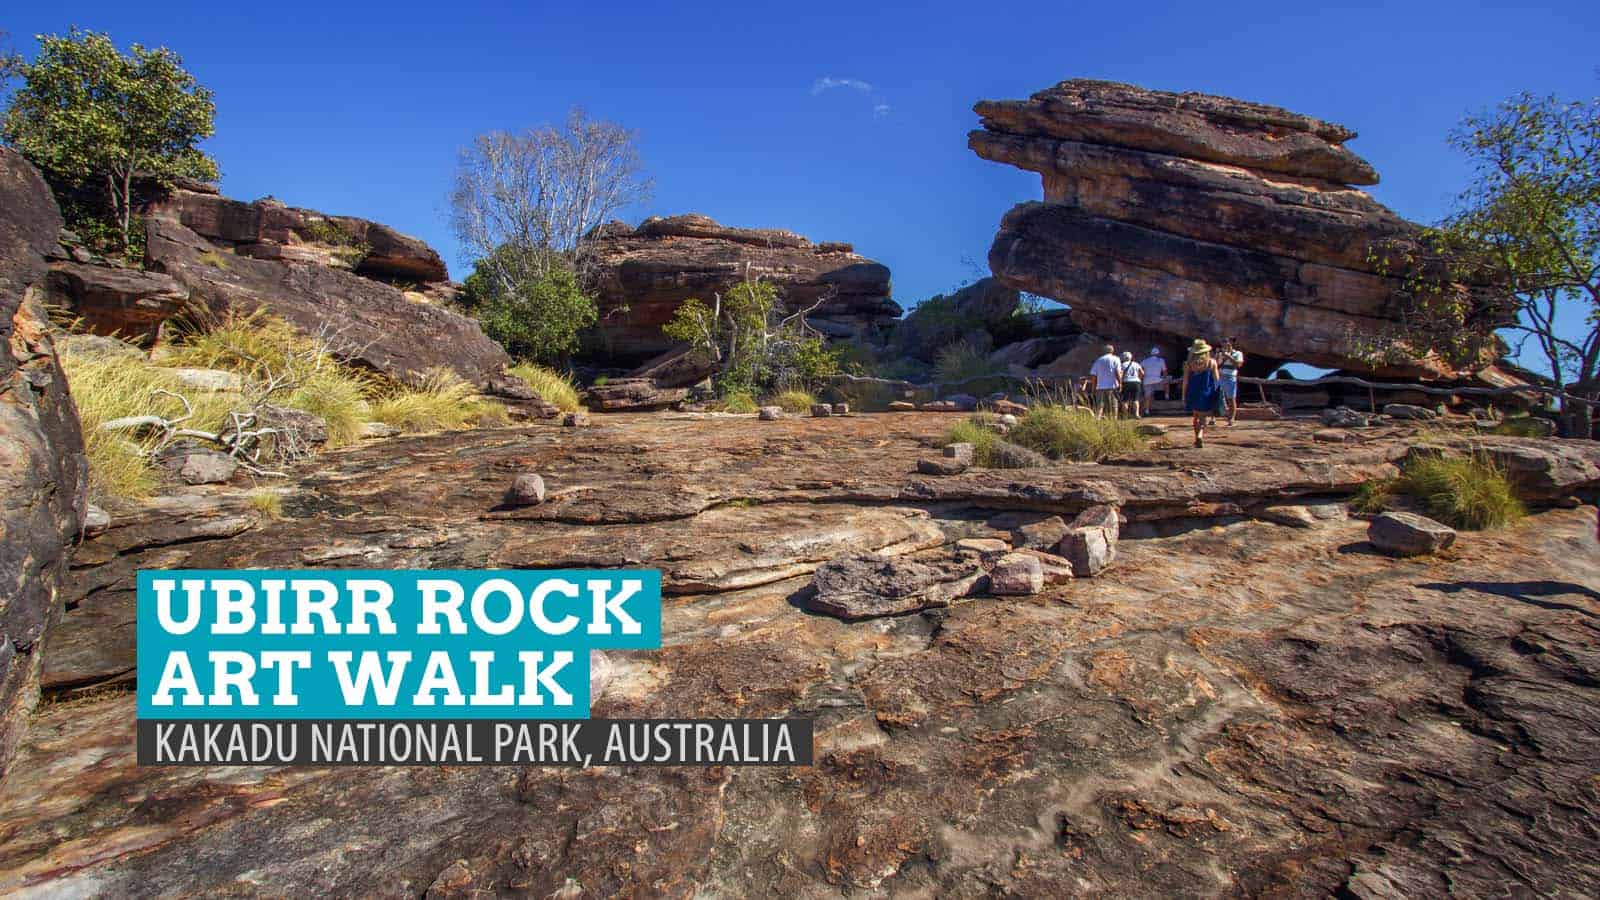 澳大利亚卡卡杜国家公园的Ubirr Rock Art Walk